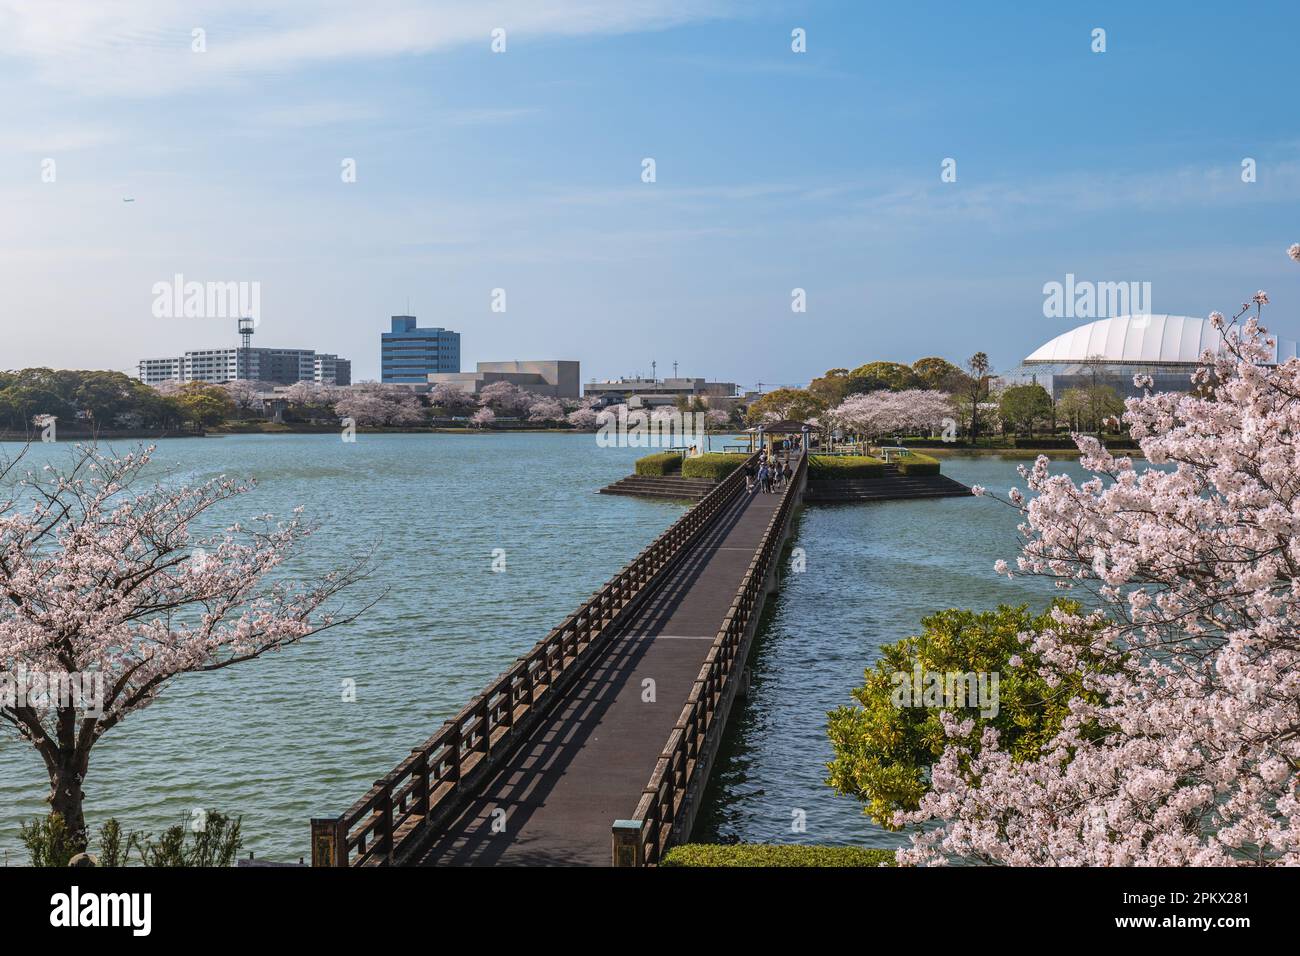 Cherry blossom at Kayoicho Park in Fukuoka, Kyushu, Japan Stock Photo